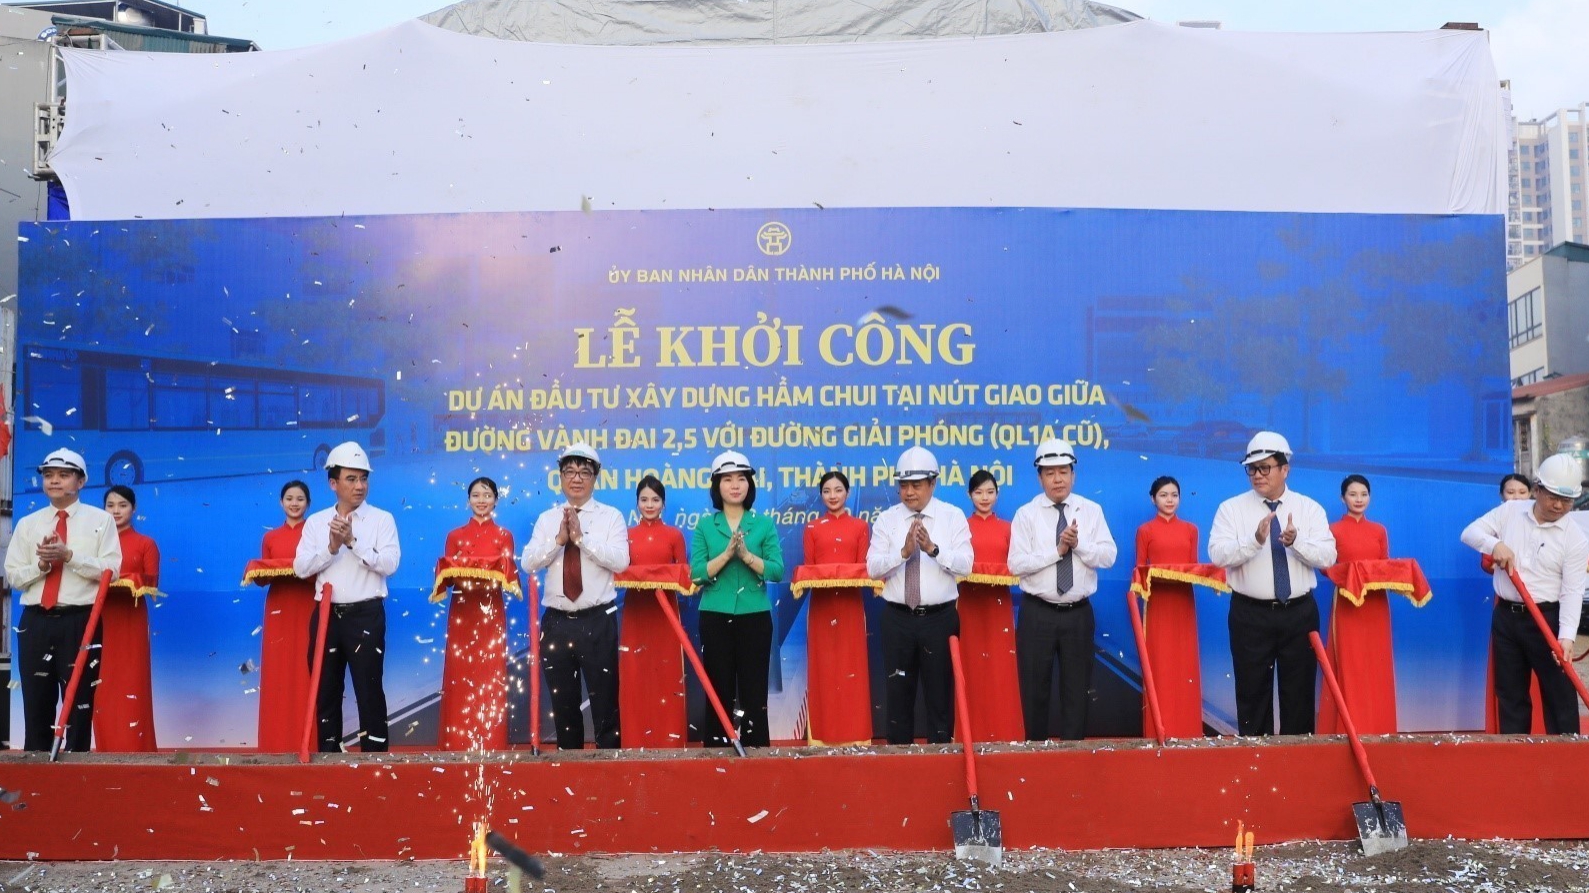 Hà Nội khởi công xây dựng hầm chui nút giao Giải Phóng - Kim Đồng với đường Vành đai 2,5 - ảnh 1